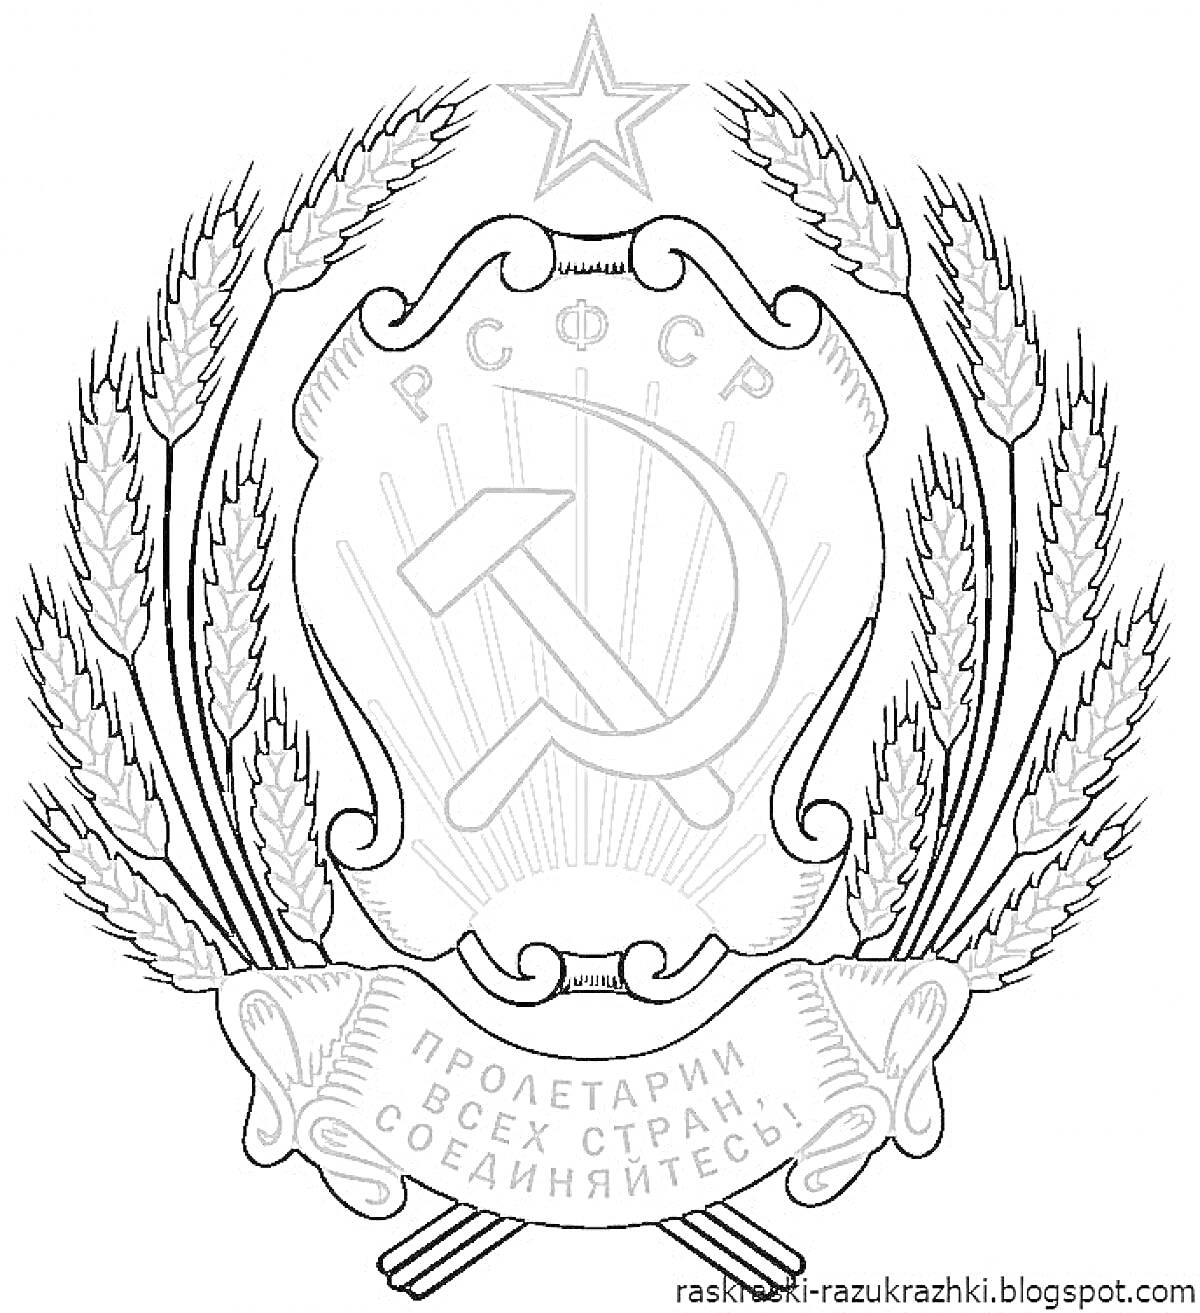 Герб РСФСР с серпом и молотом, звездой, колосьями пшеницы и лозунгом 